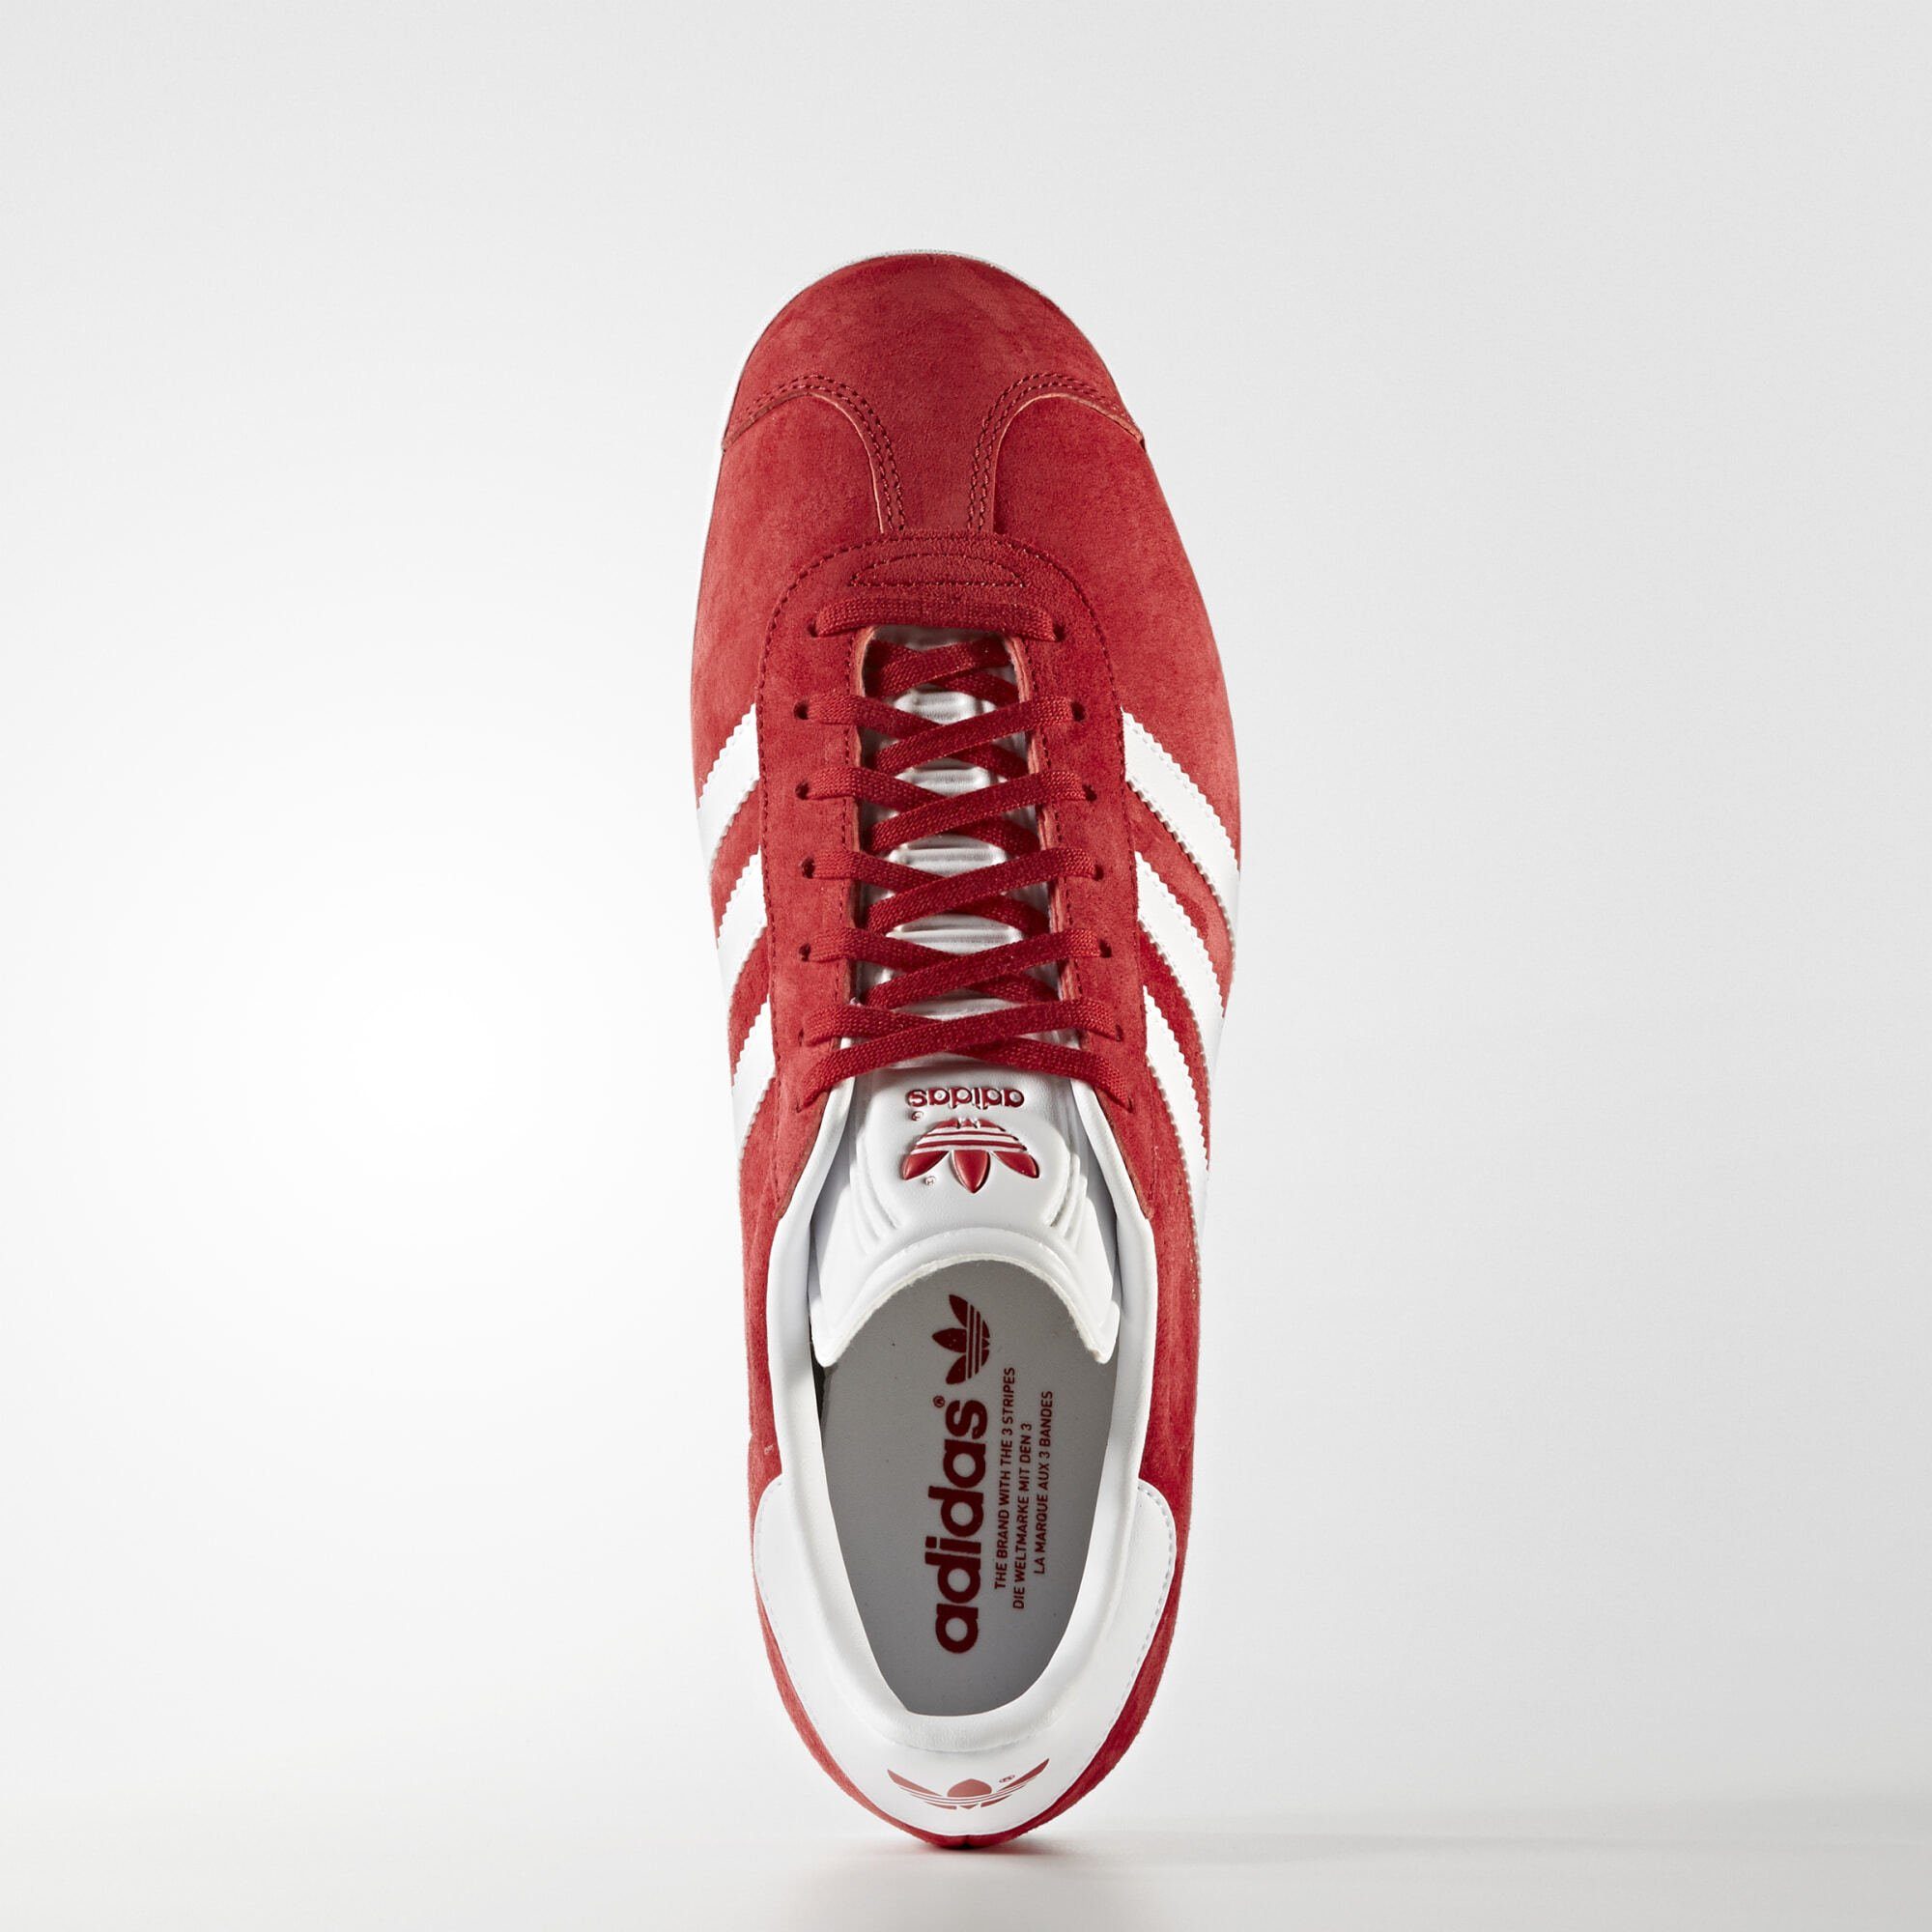 White SCHUH Originals Power Sneaker GAZELLE / Red Gold adidas Metallic /